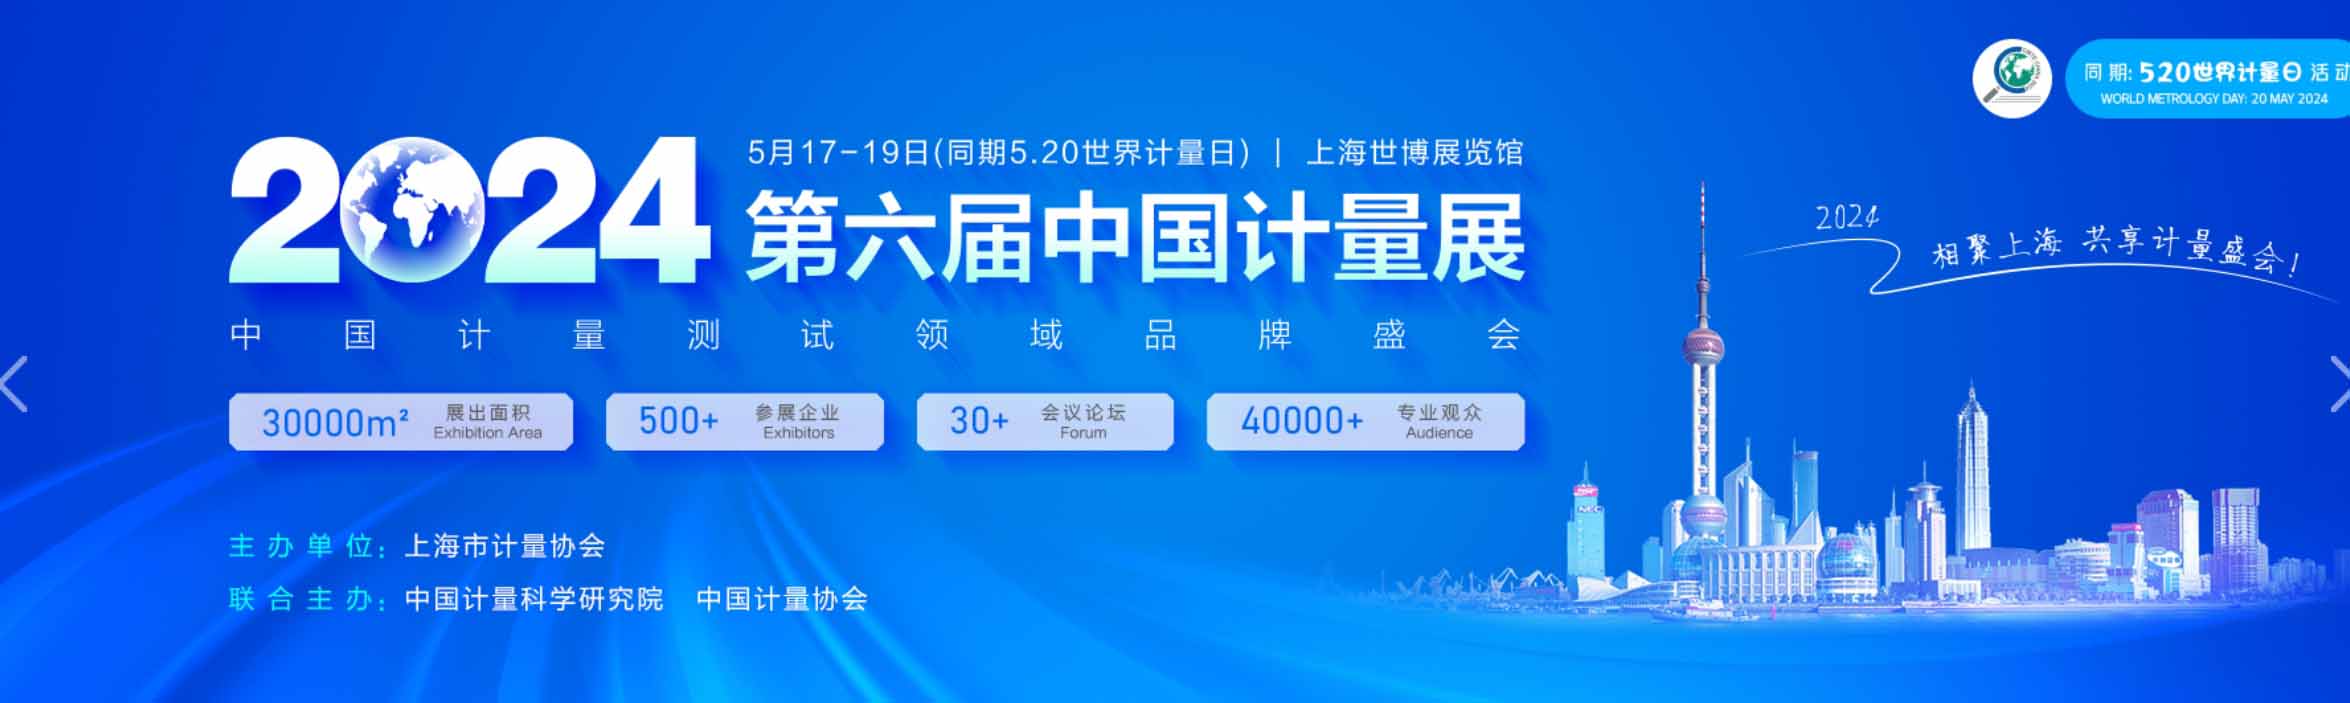 莱切诺传感器公司将参加2024年第六届上海计量博览会